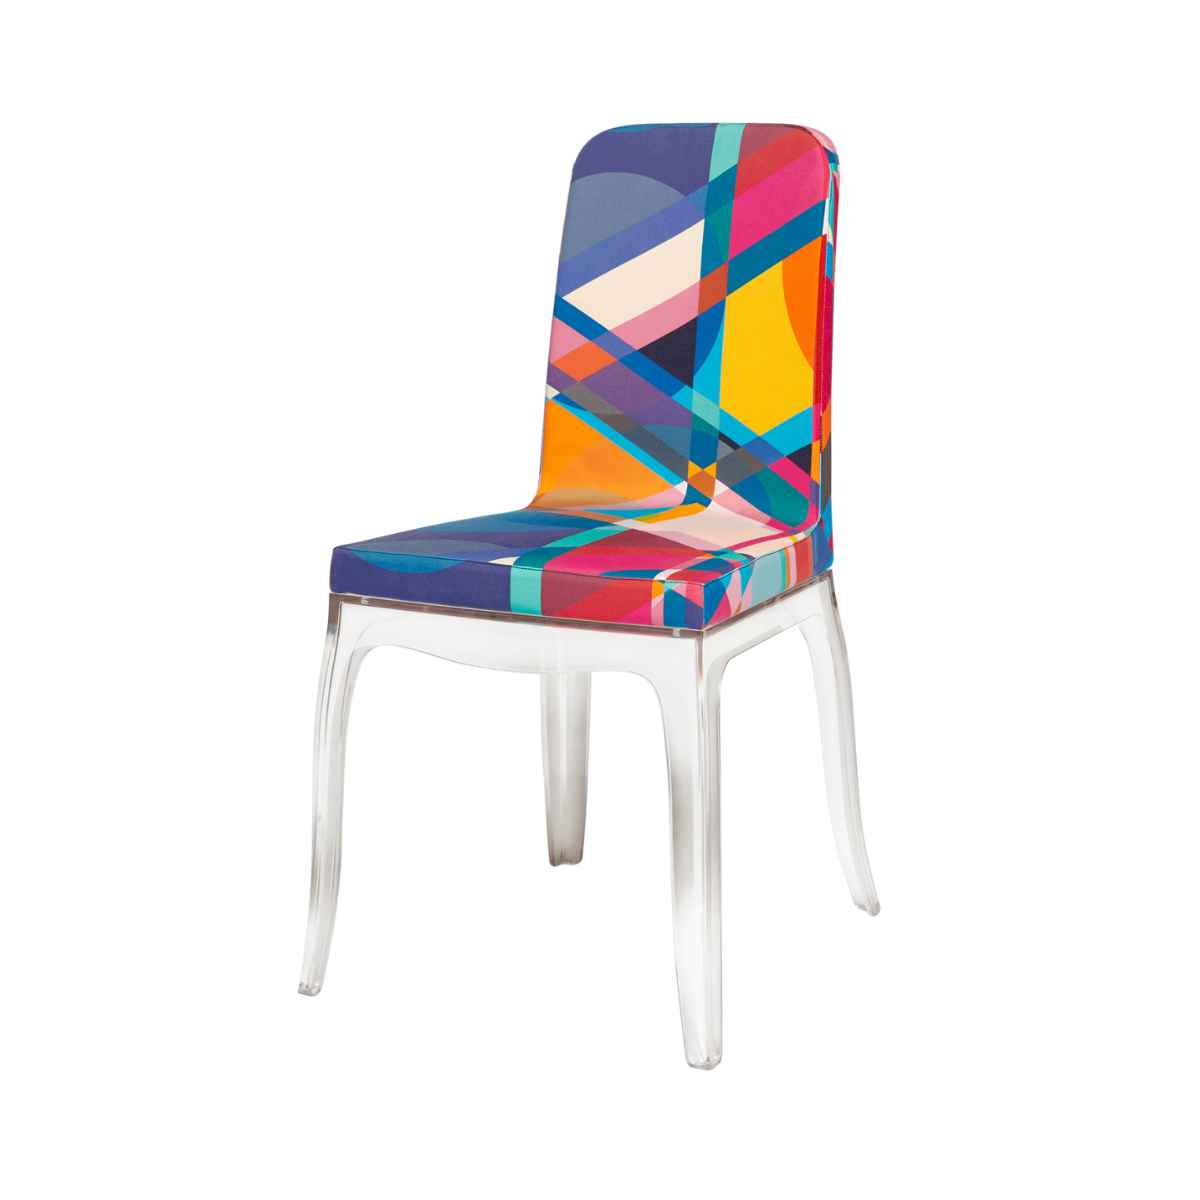 Moibibi Coloured B.B. Chair - Qeeboo